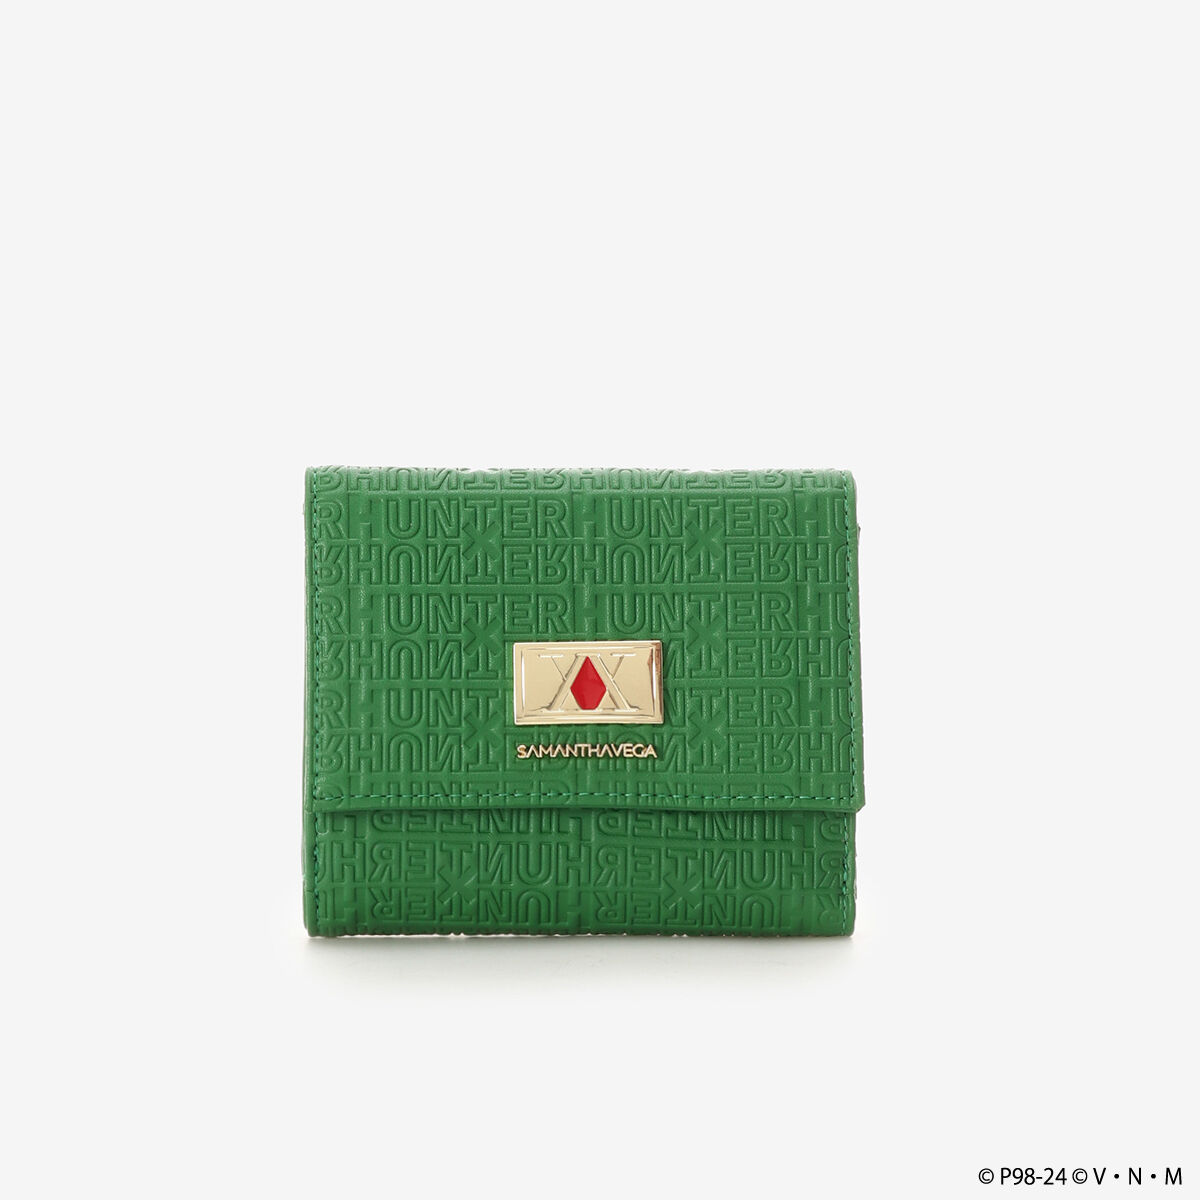 6,600円HUNTER×HUNTER SAMANTHAVEGA 「クロロ」 折り財布